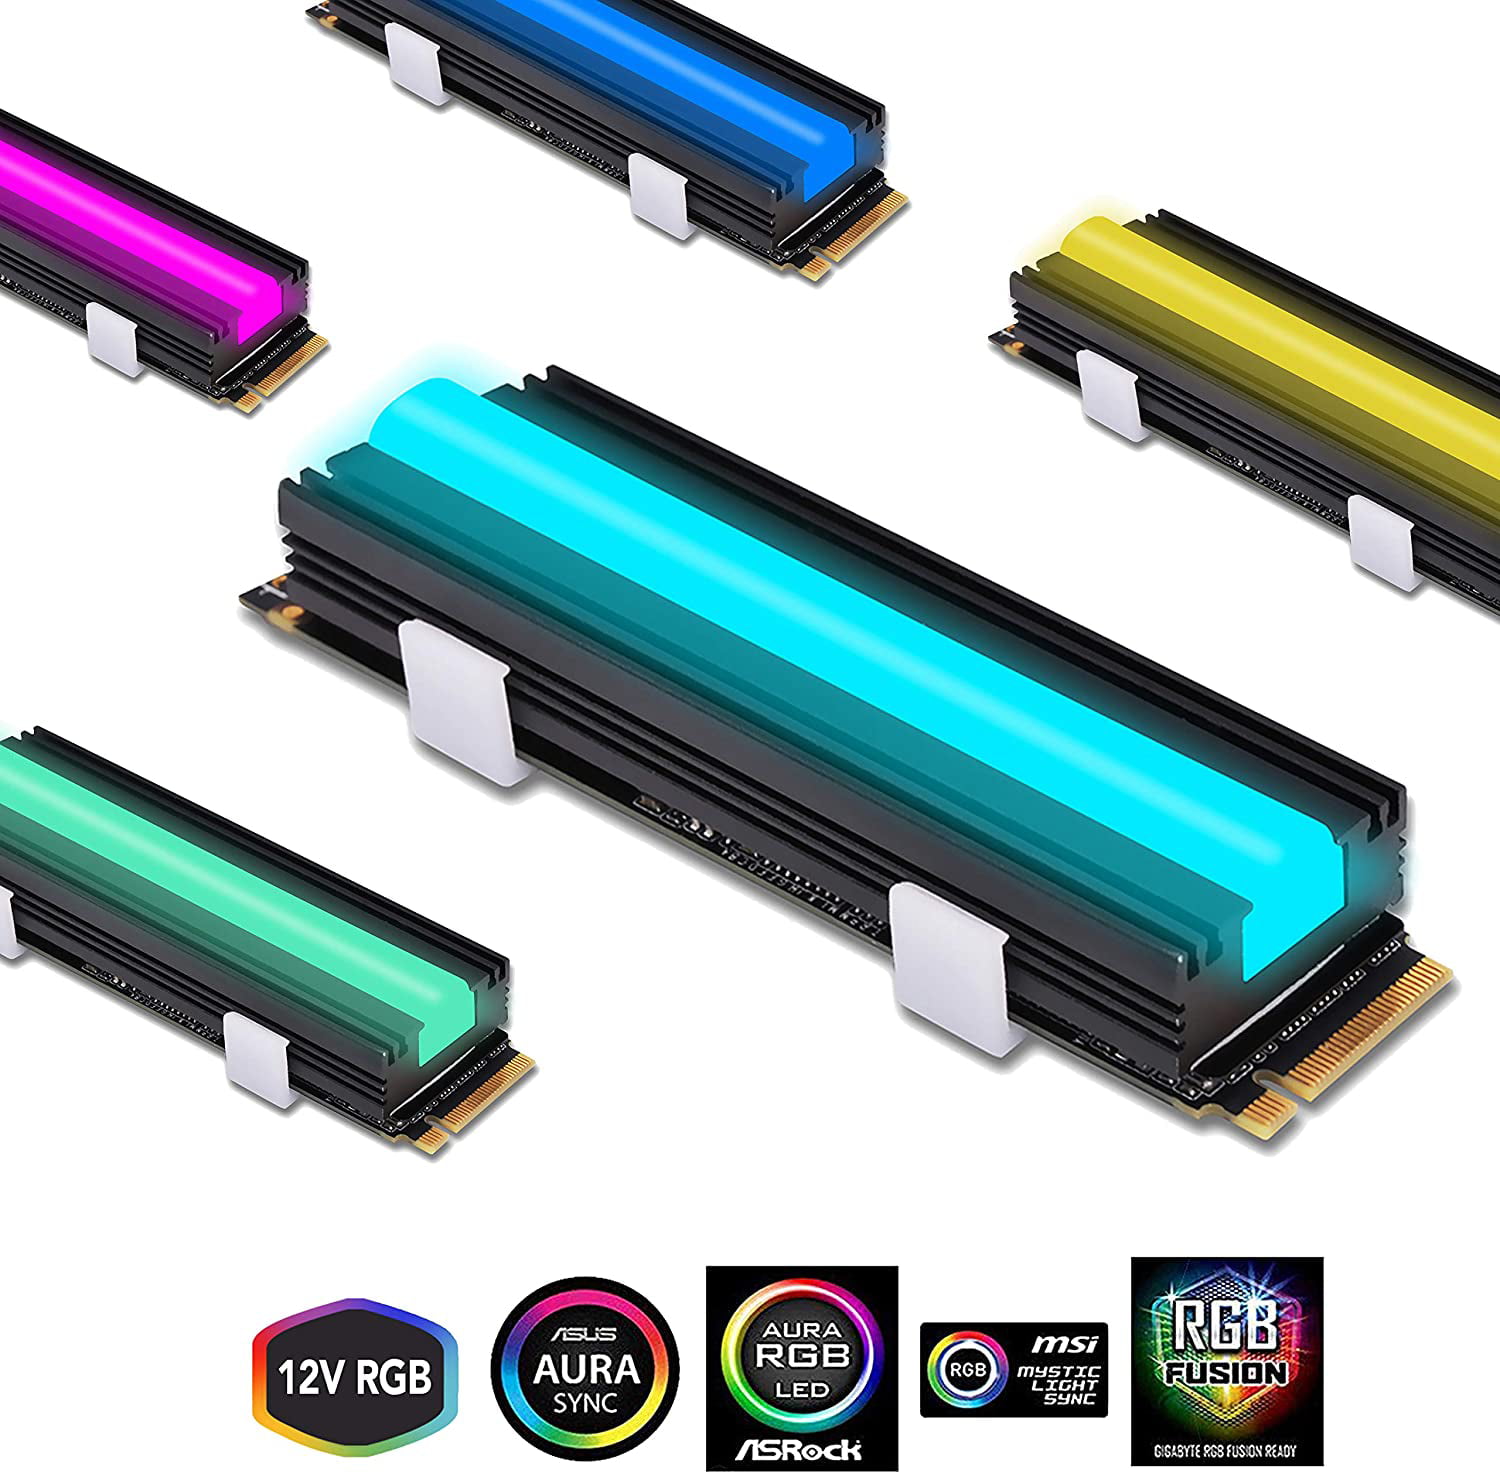 EZDIY-FAB NVME M.2 Aluminiumkühlkörper 12V 4-poliger RGB-Kühler für 2280 M2 SSD-Kühlkörper Tri-Cool mit Silikon-Wärmeleitpad 